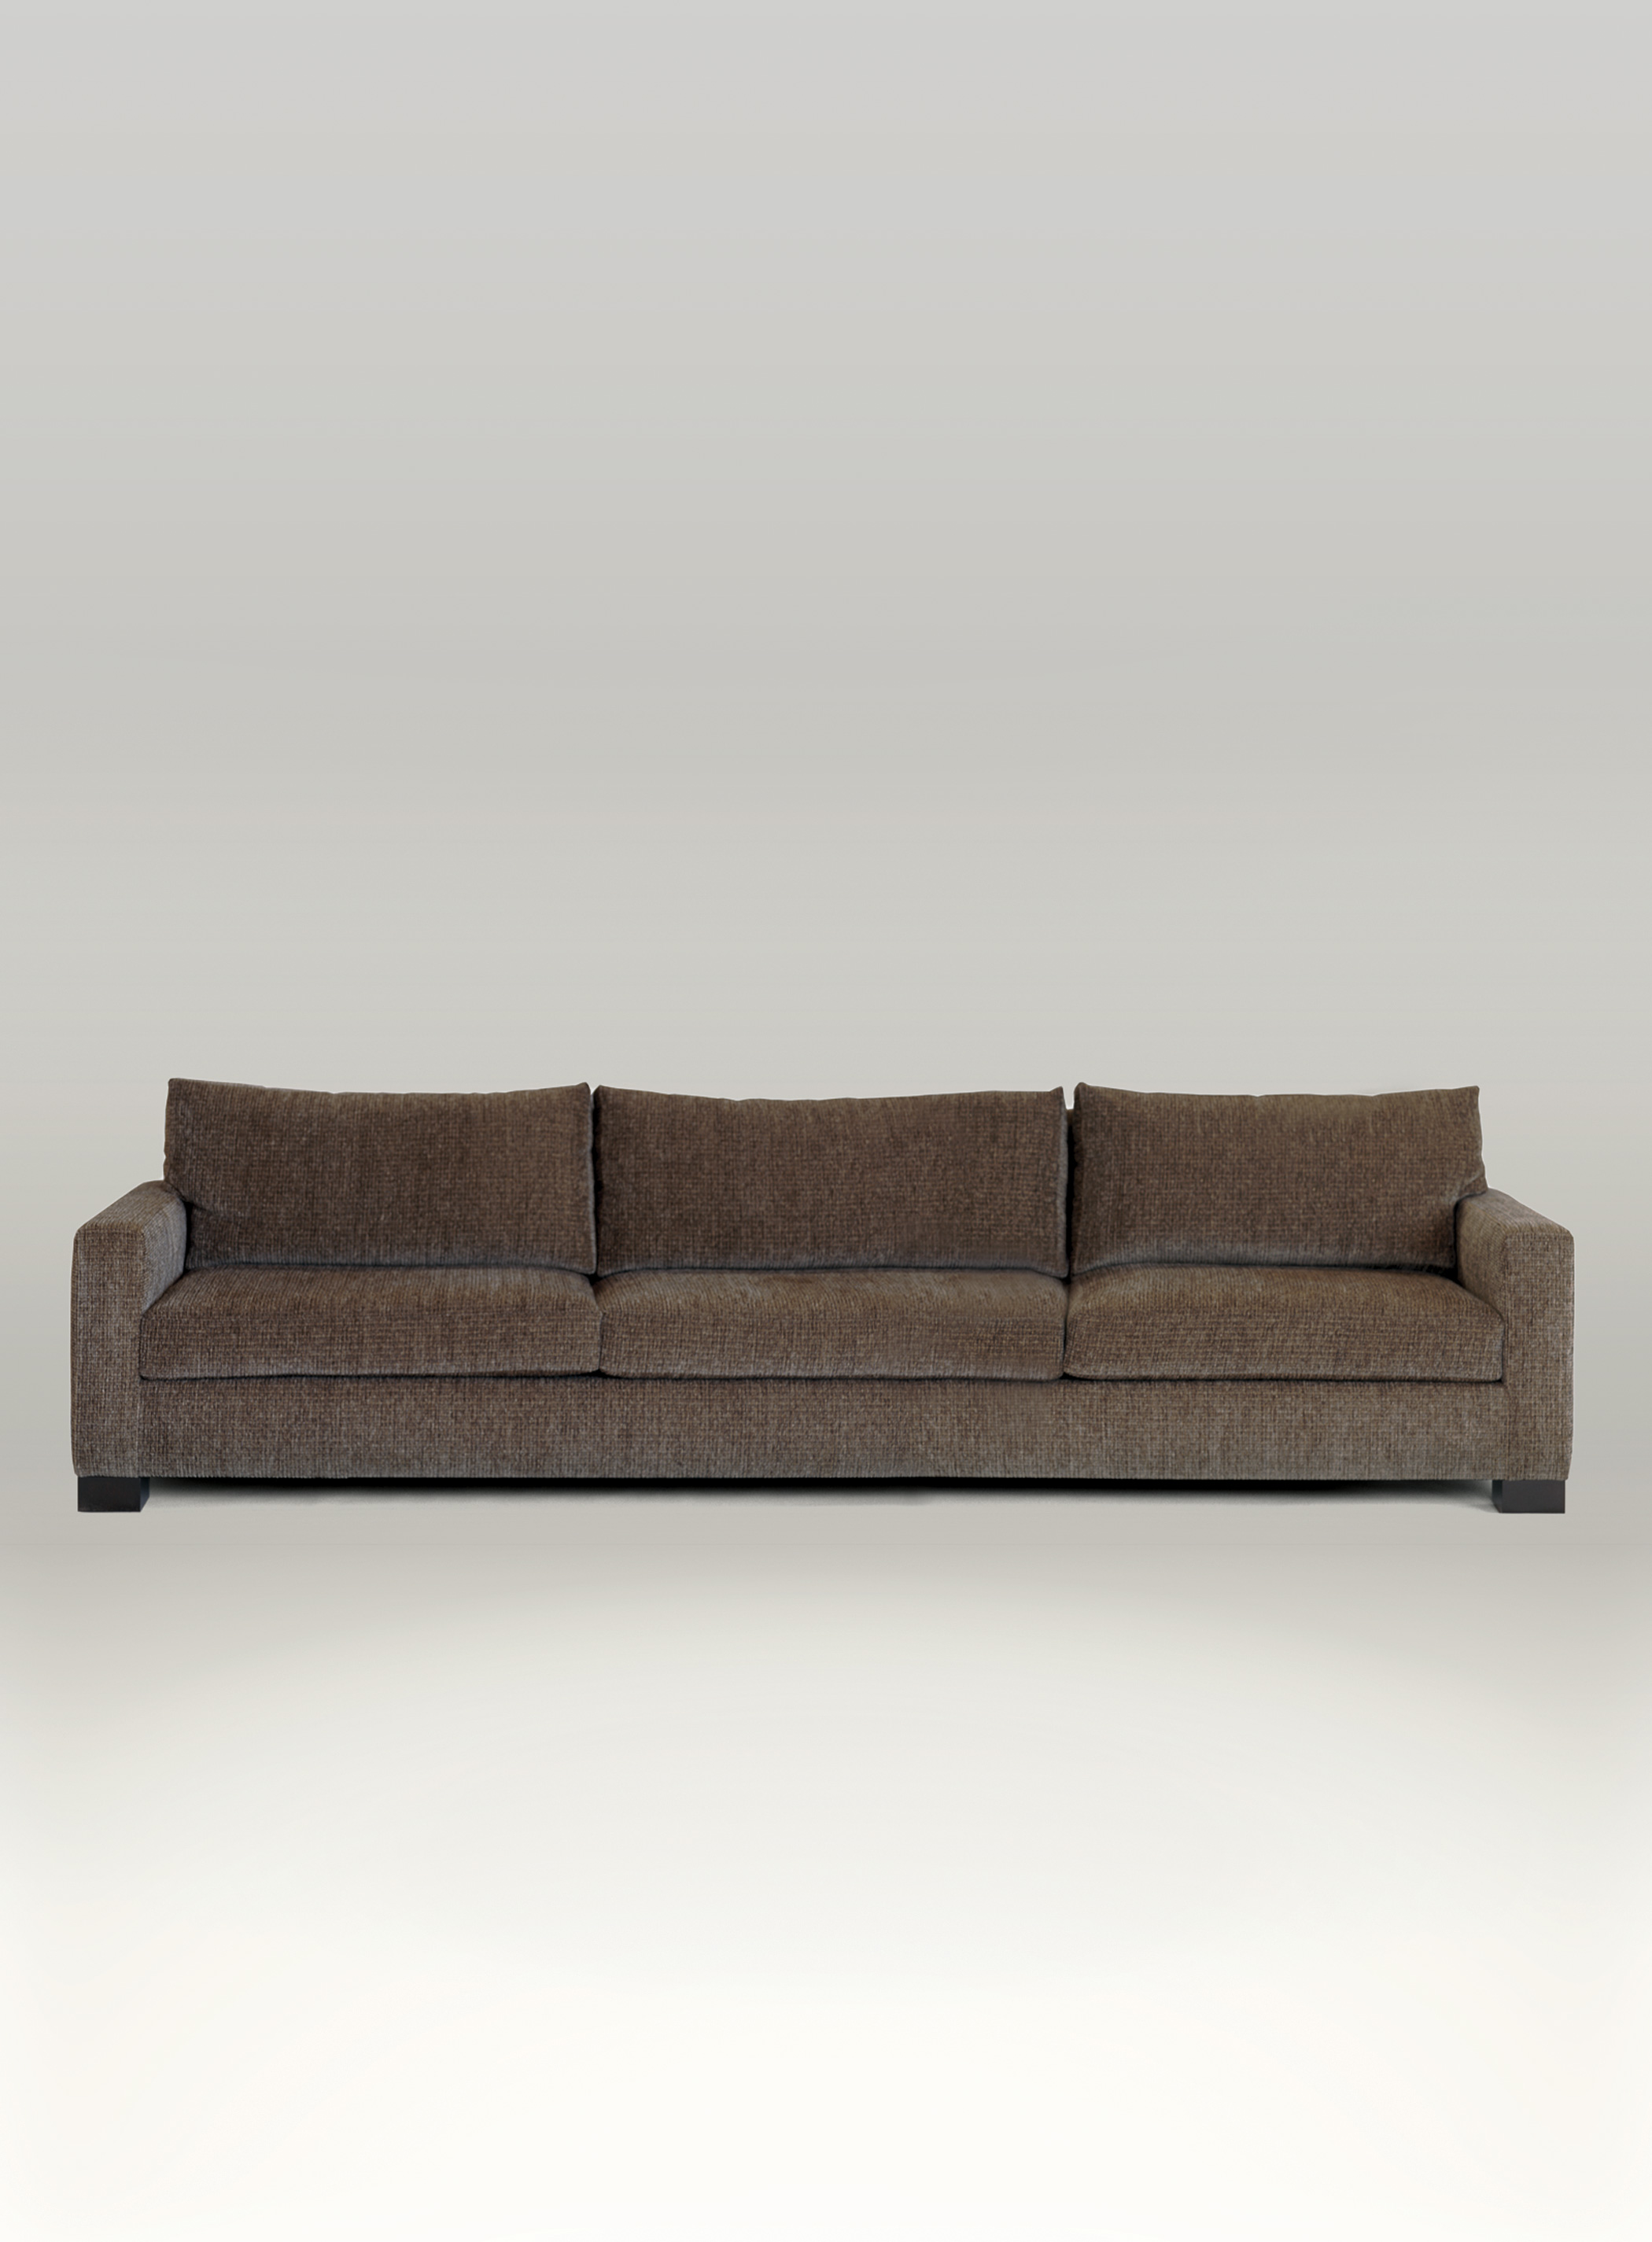 Trousdale Sofa